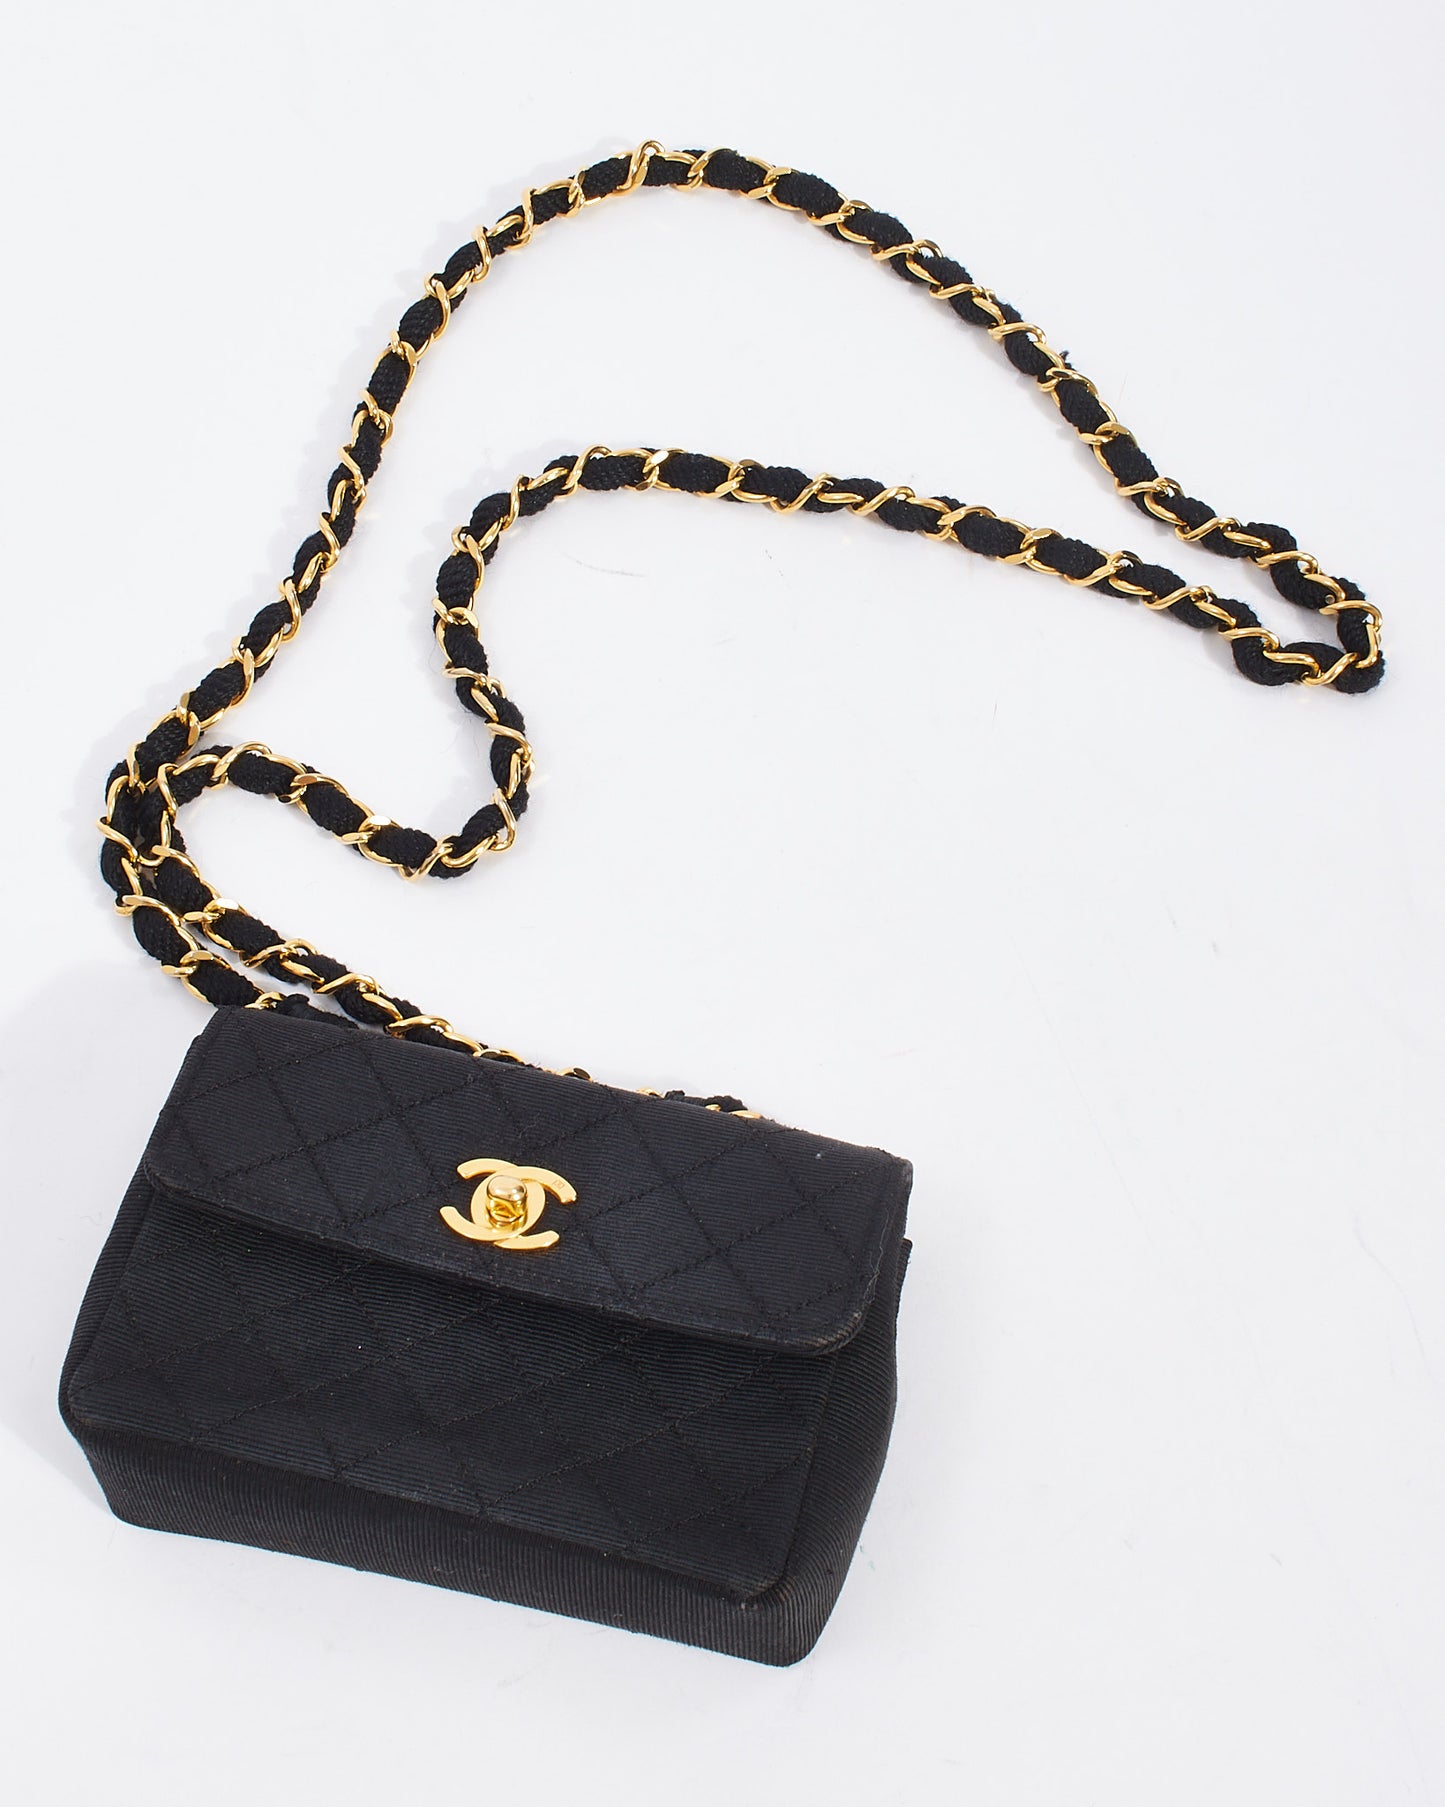 Mini sac à rabat en toile matelassée noire vintage Chanel GHW